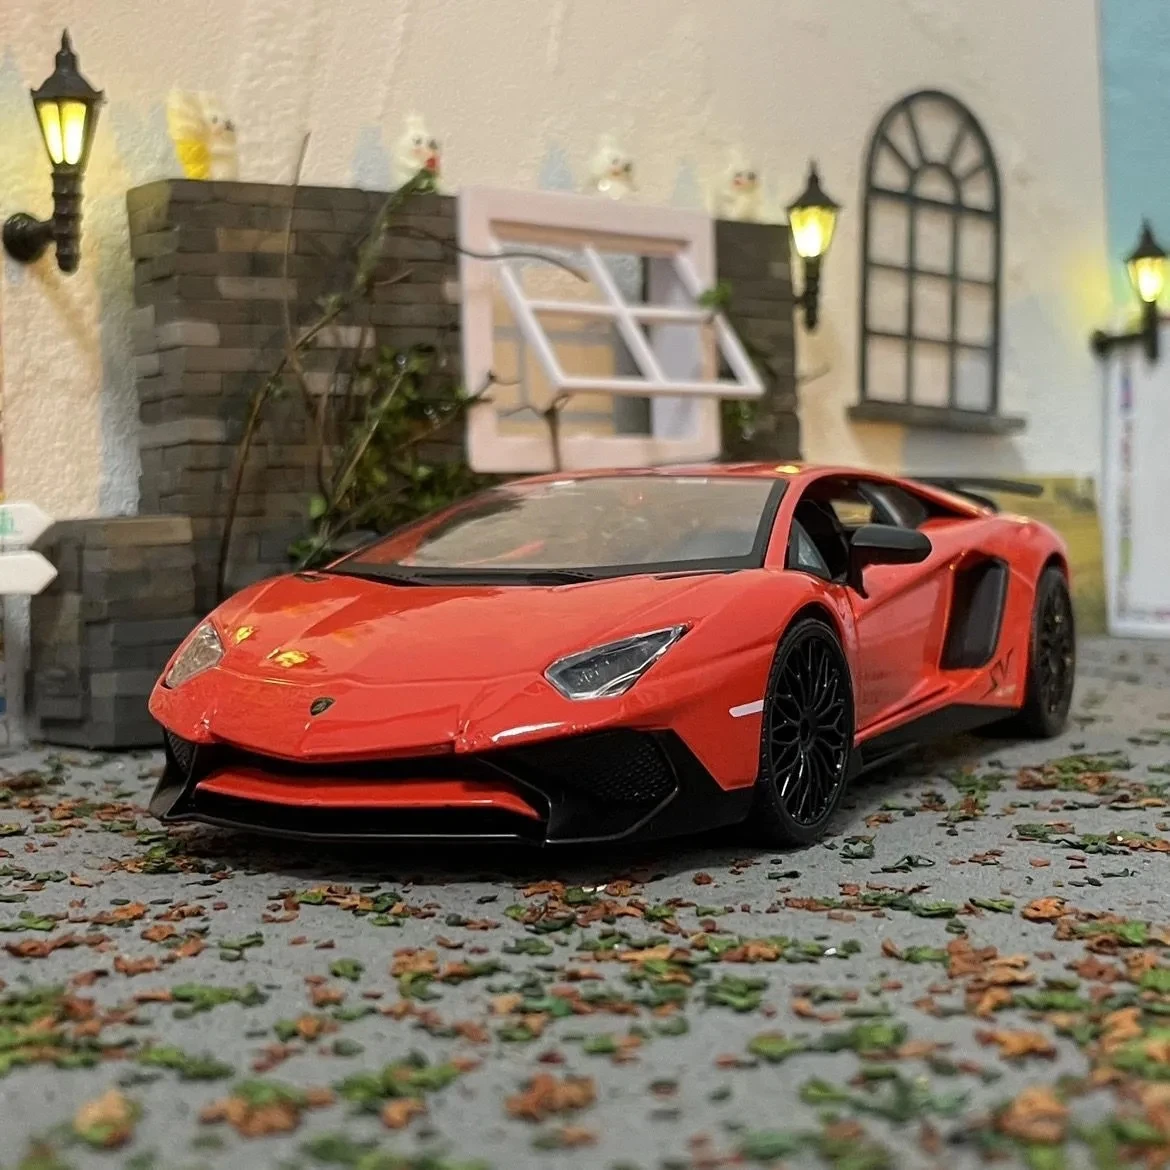 

Модель автомобиля Bburago в масштабе 1:24 Lamborghini автомобиль, Спортивная модель из сплава, литая металлическая Игрушечная модель автомобиля, имитация коллекции, Подарочные игрушки